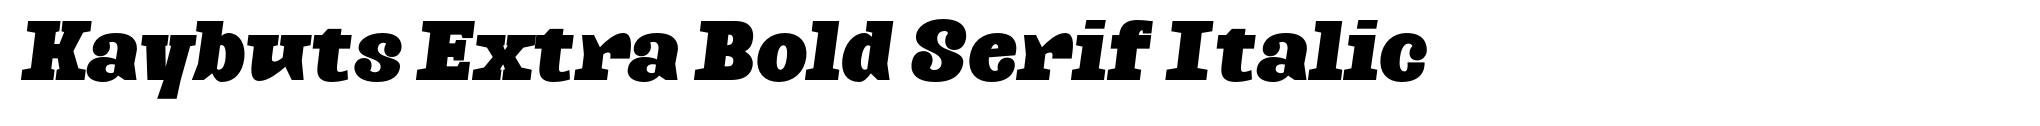 Kaybuts Extra Bold Serif Italic image